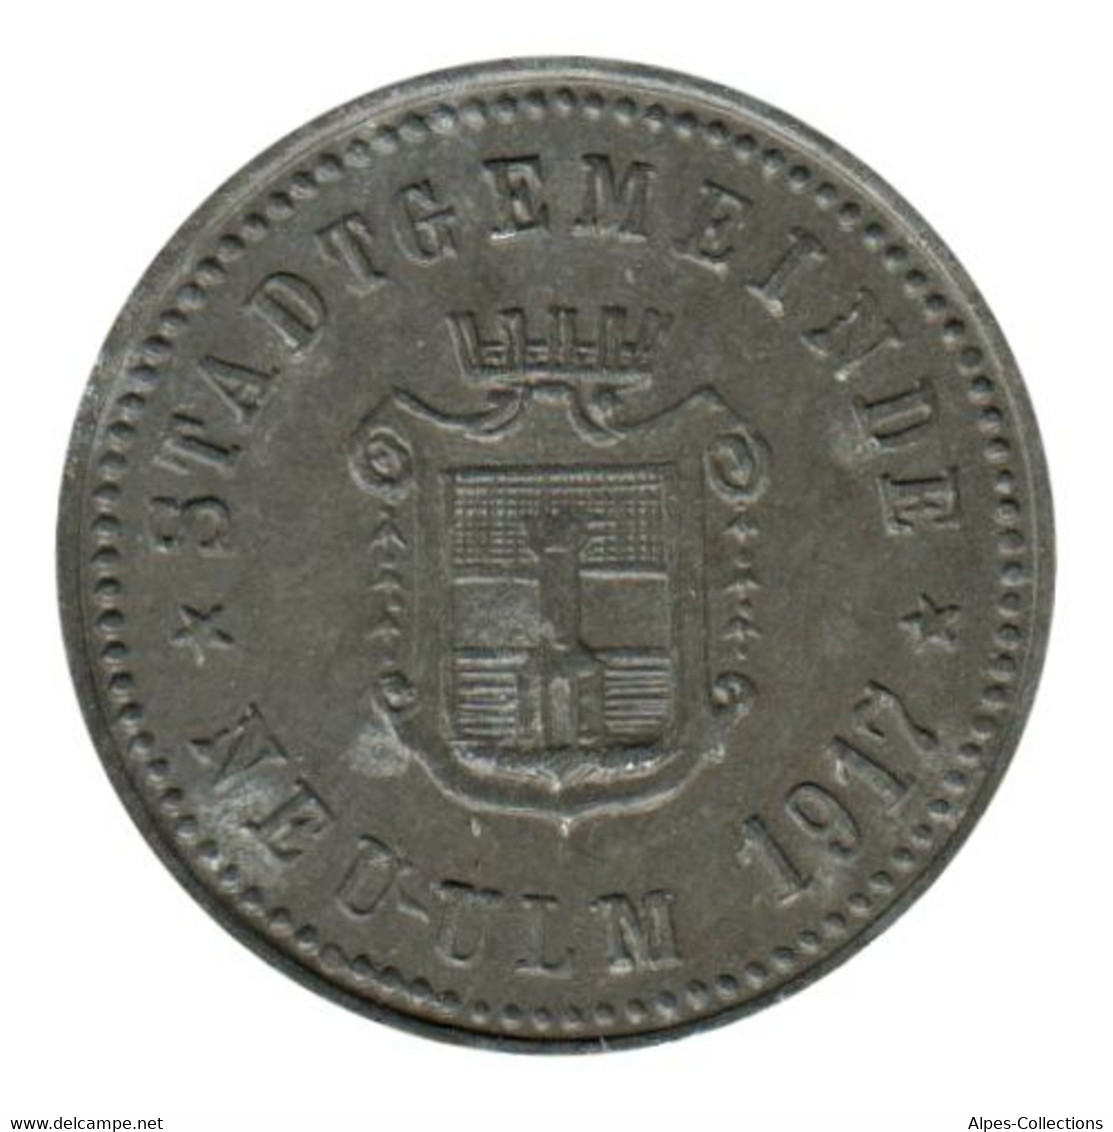 ALLEMAGNE - NEUS-ULM - 10.1 - Monnaie De Nécessité - 10 Pfennig  1917 - Monétaires/De Nécessité